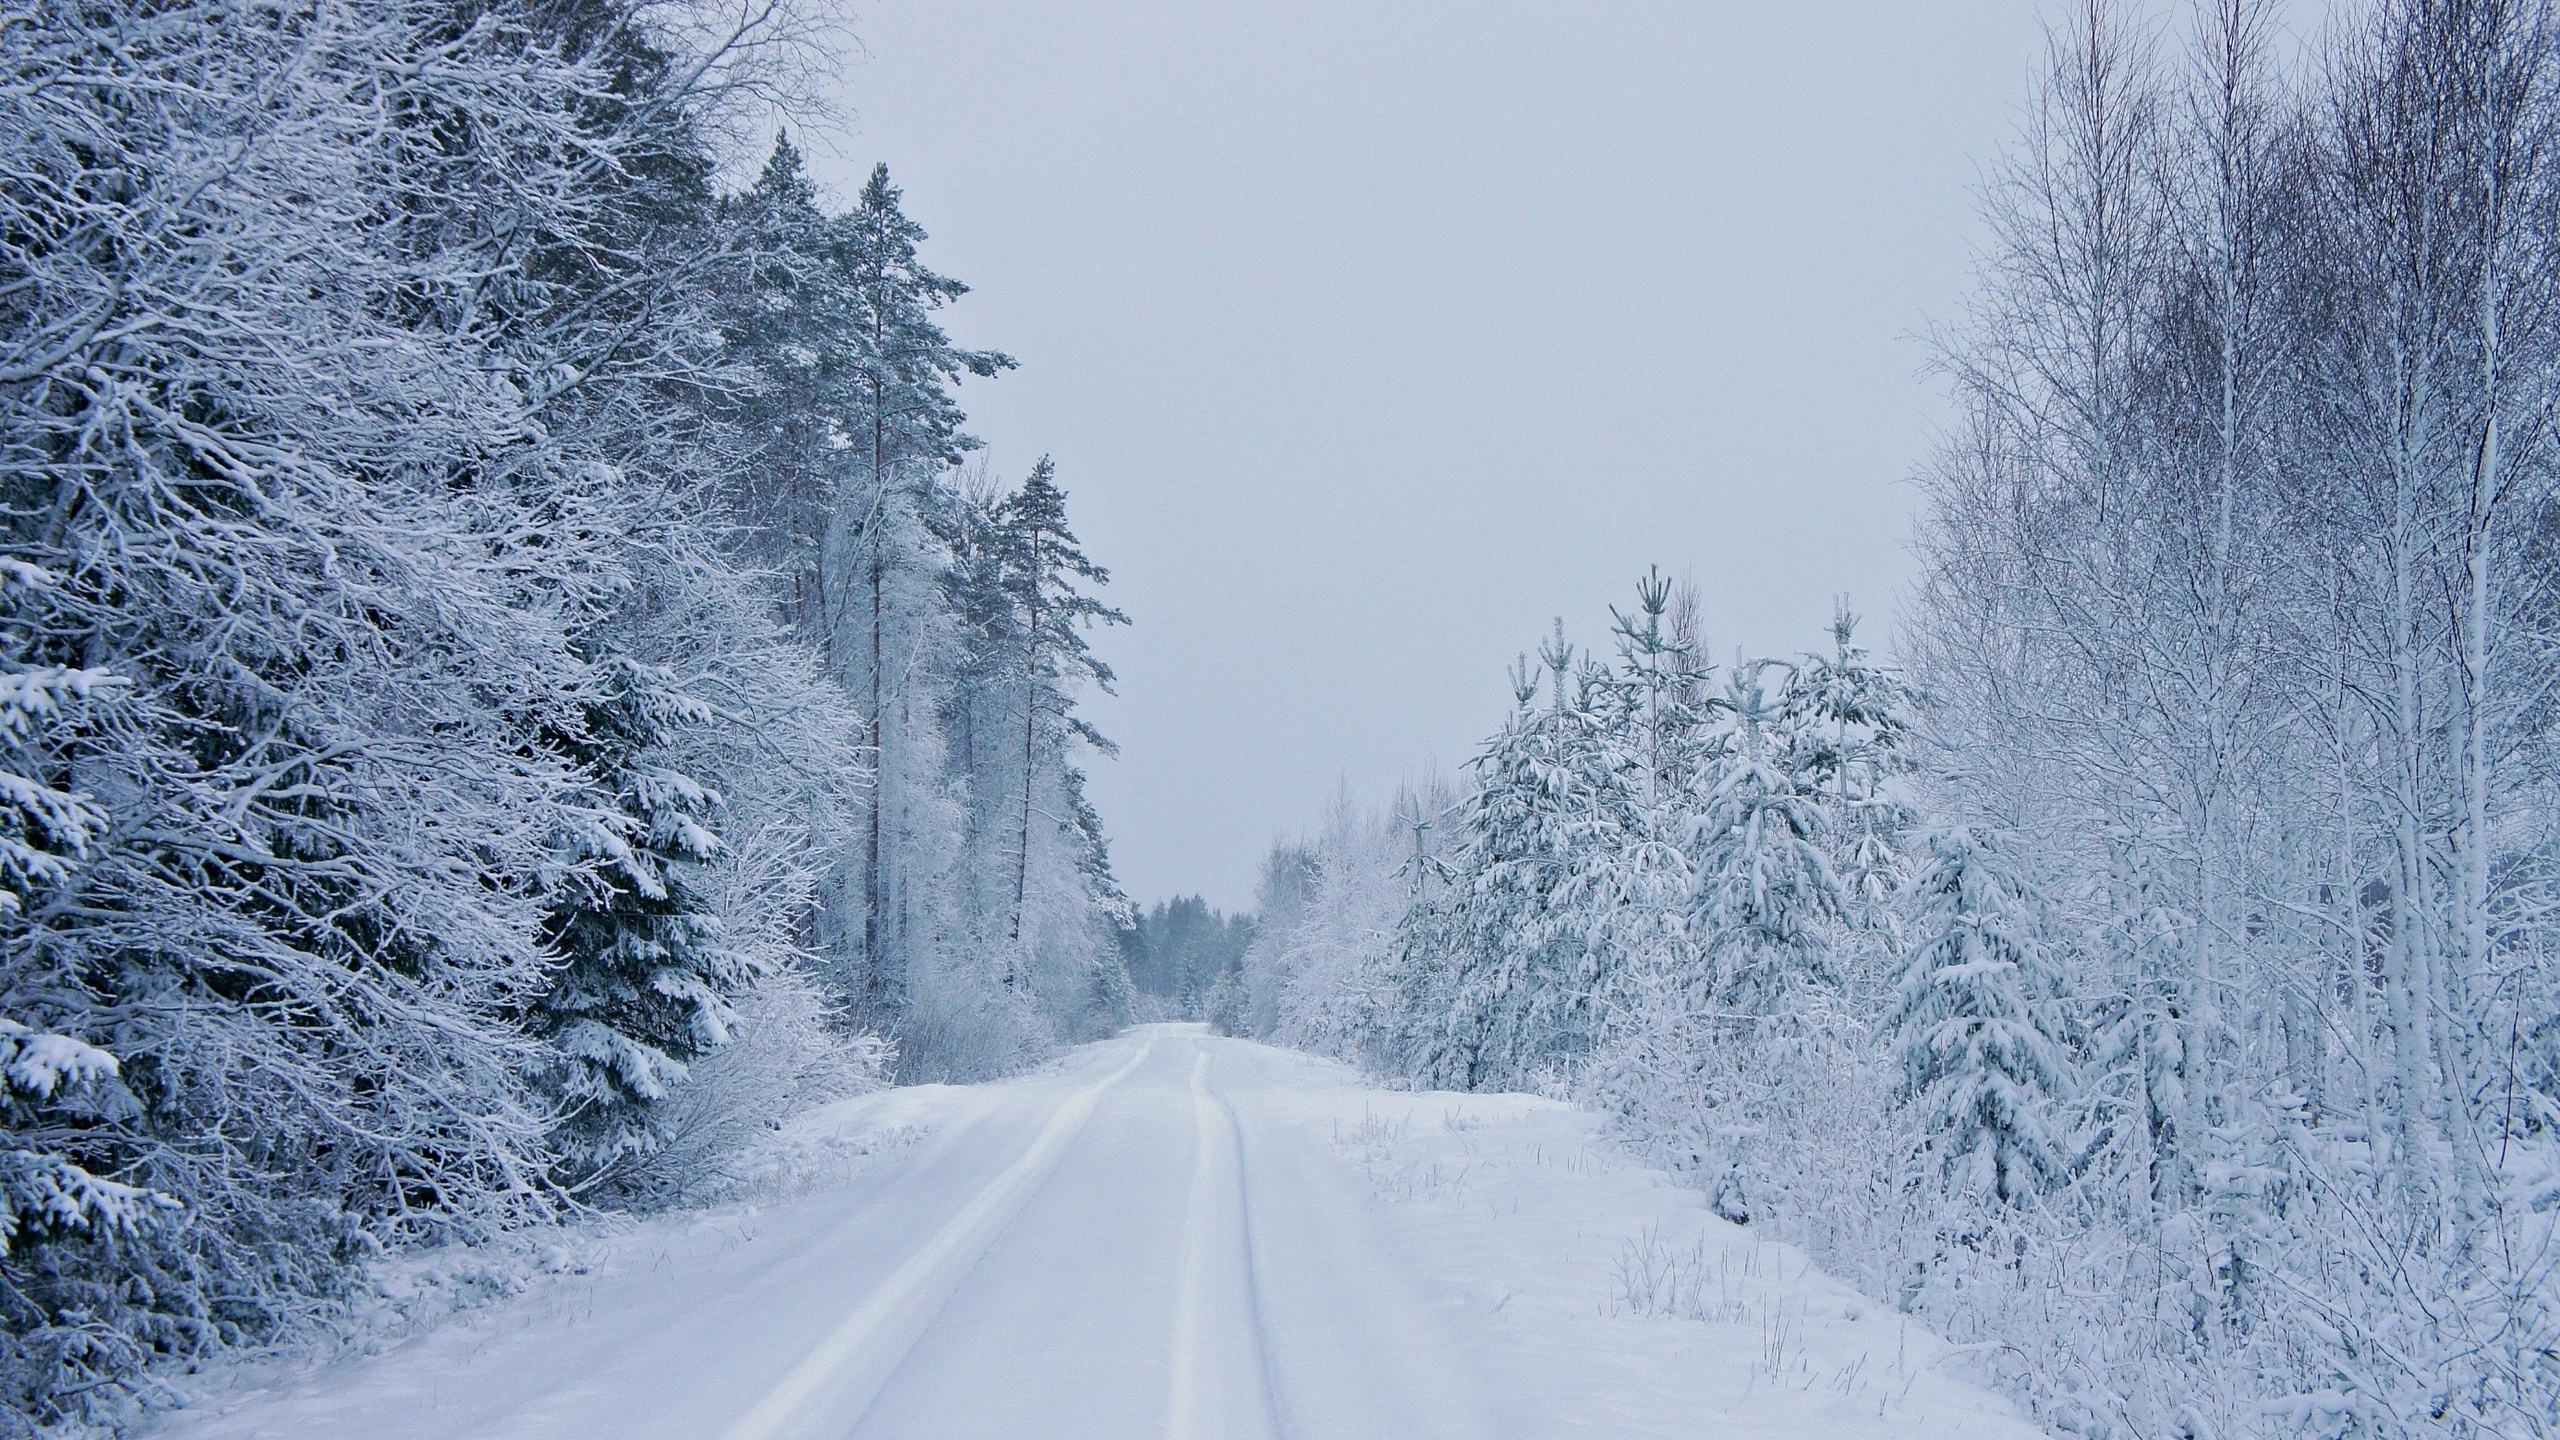 Скачать обои бесплатно Зима, Снег, Дорога, Лес, Дерево, Земля/природа картинка на рабочий стол ПК